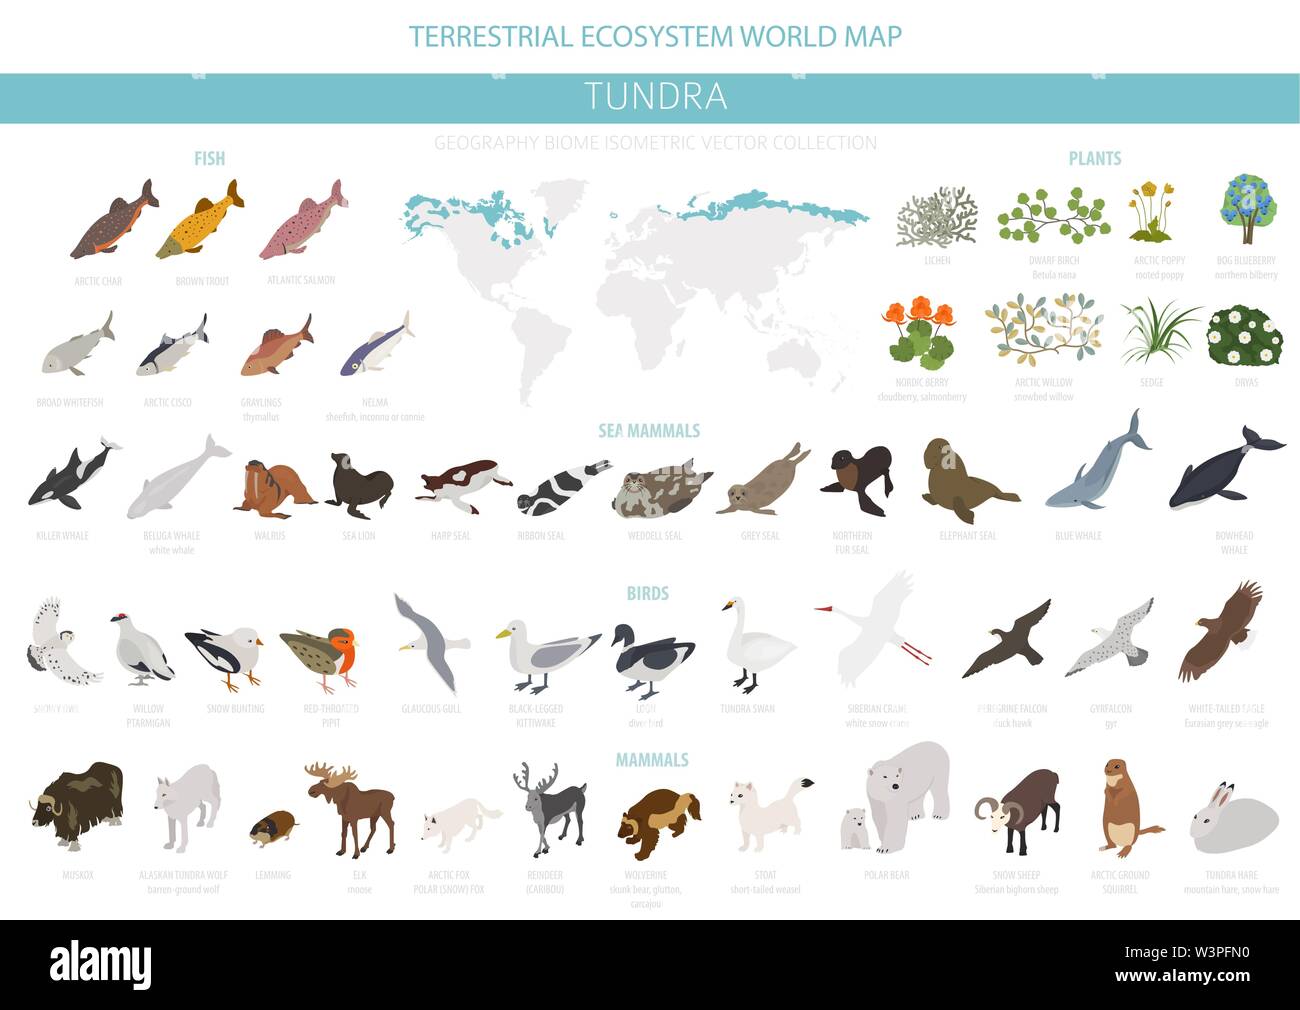 Tundra biome. Isometrische 3d-Stil. Terrestrischen Ökosystem Weltkarte. Arktische Tiere, Vögel, Fische und Pflanzen Infografik Design. Vector Illustration Stock Vektor